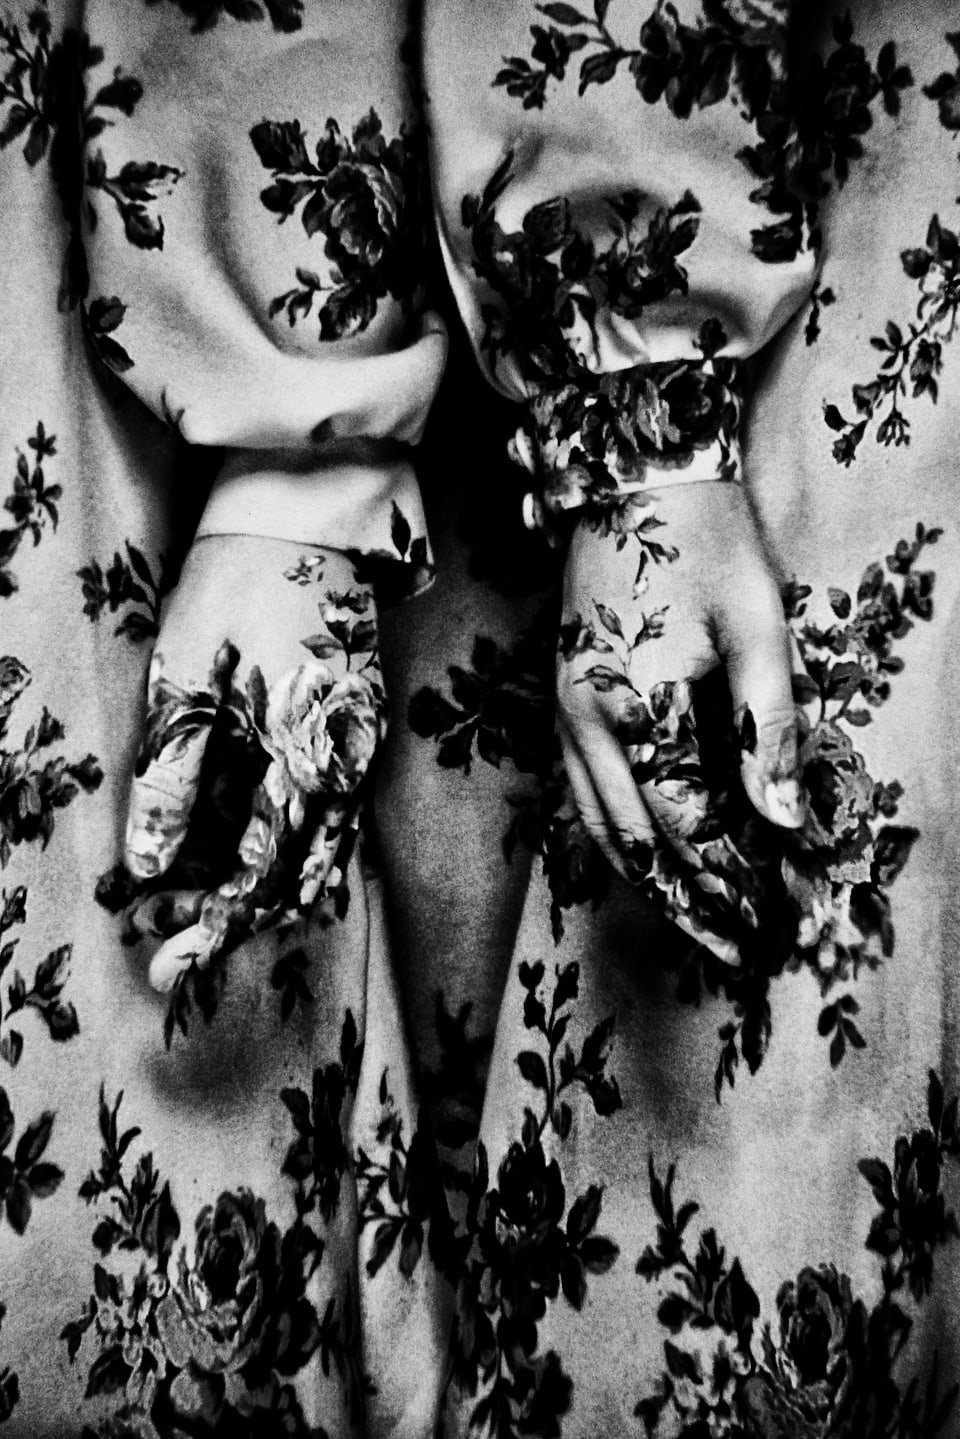 Ein Kleid und Hände voller Blumenmuster.